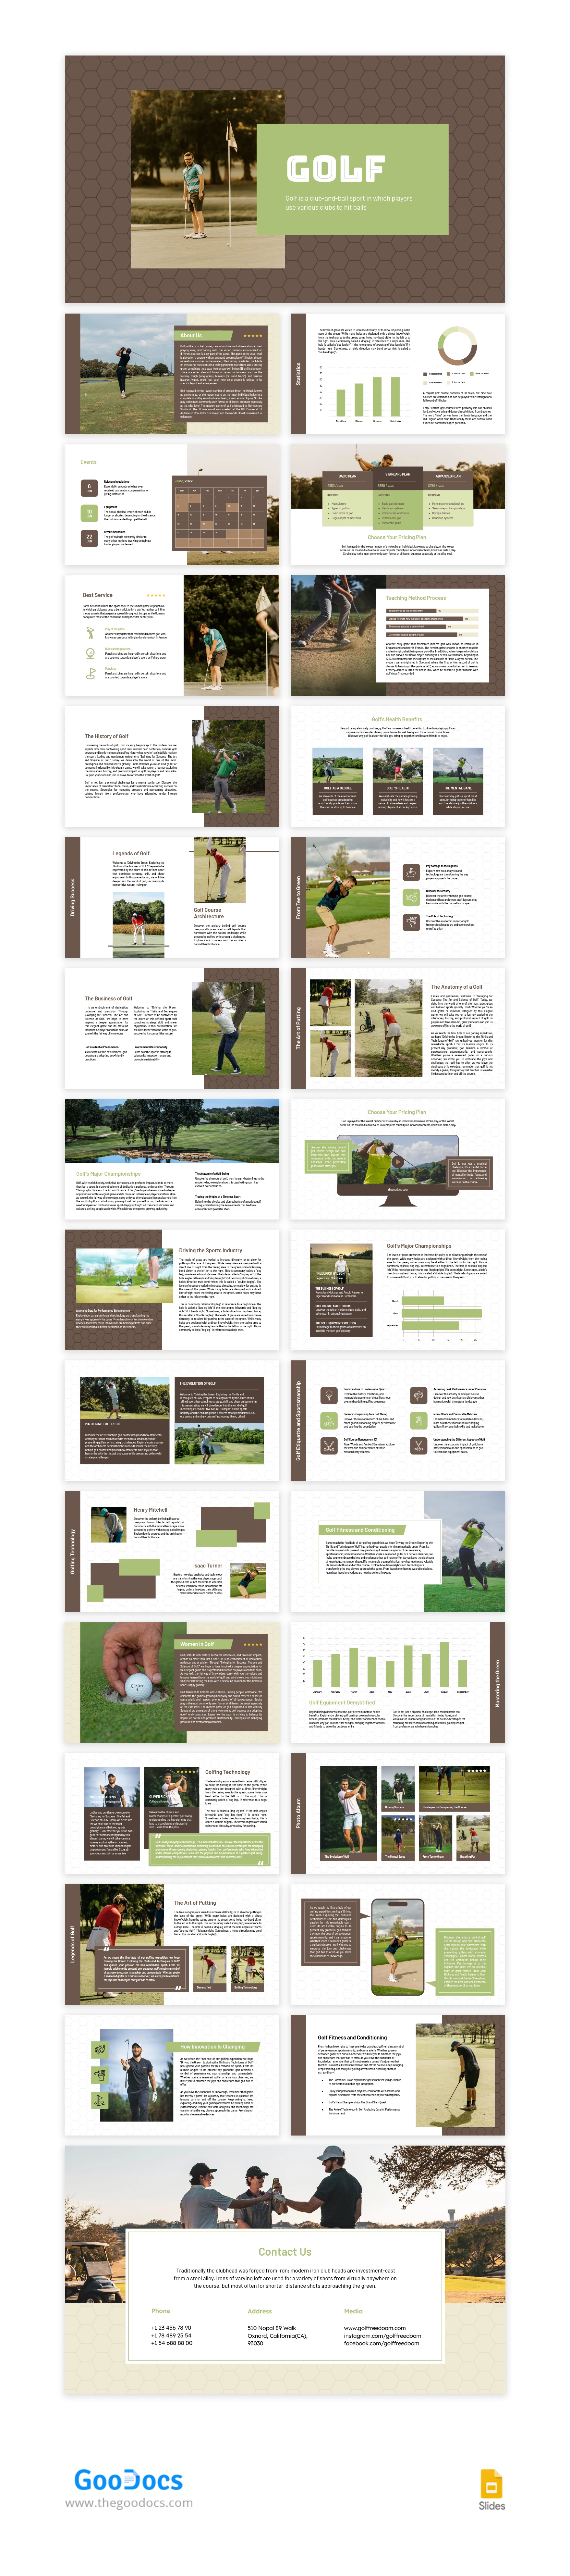 Beau sport brun Golf - free Google Docs Template - 10067059